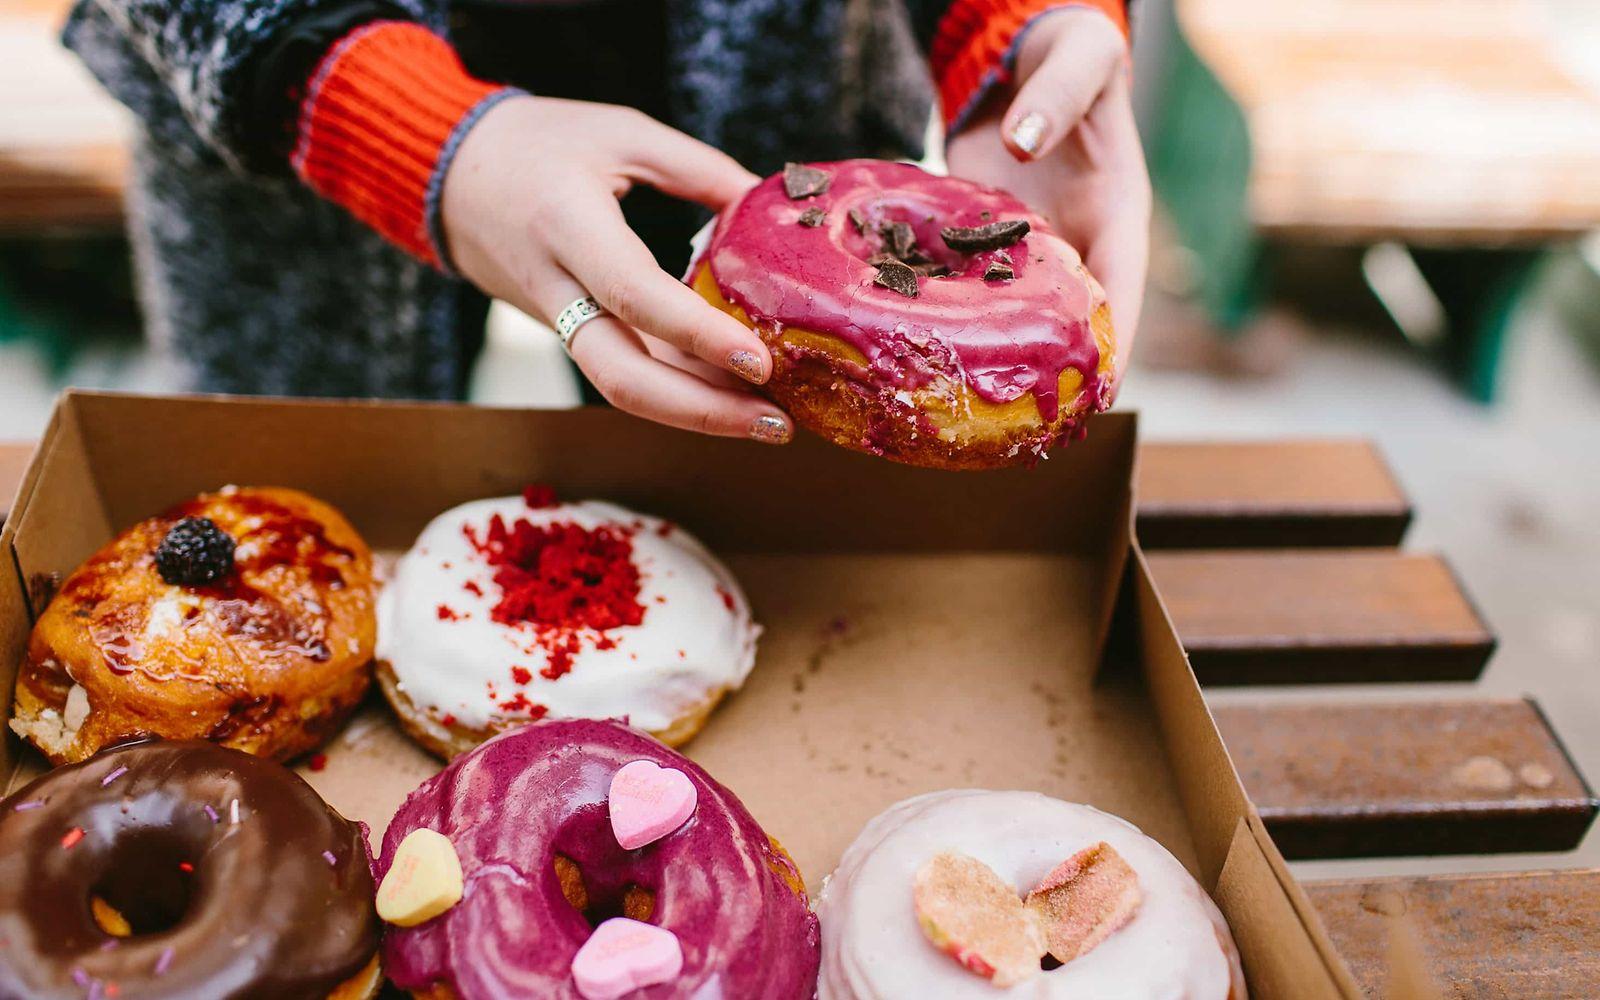 Binge Eating: Karton mit bunt glasierten Donuts.